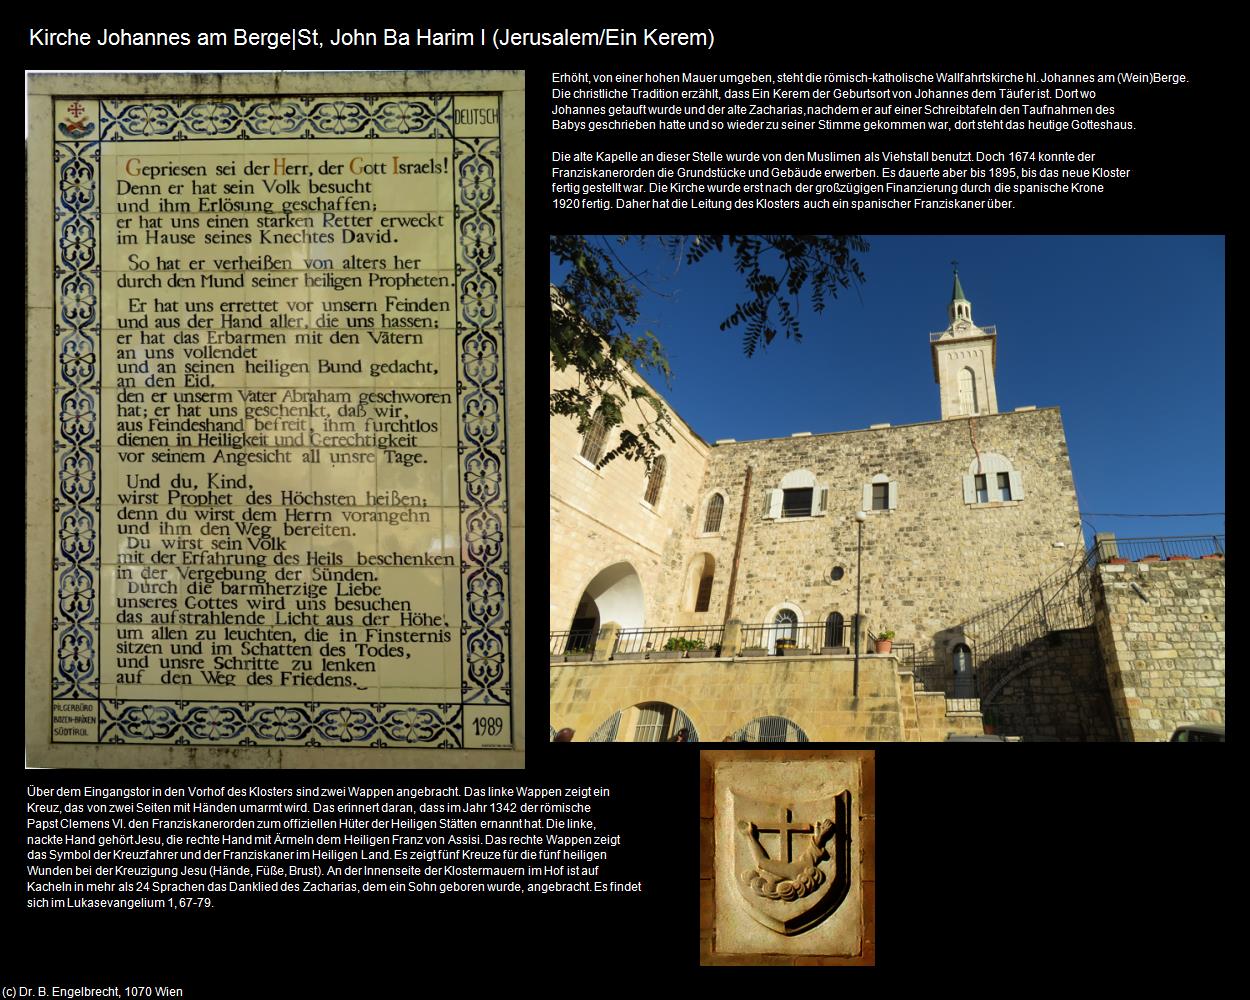 Kirche Johannes am Berge I (Ein Kerem) (Jerusalem) in Kulturatlas-ISRAEL